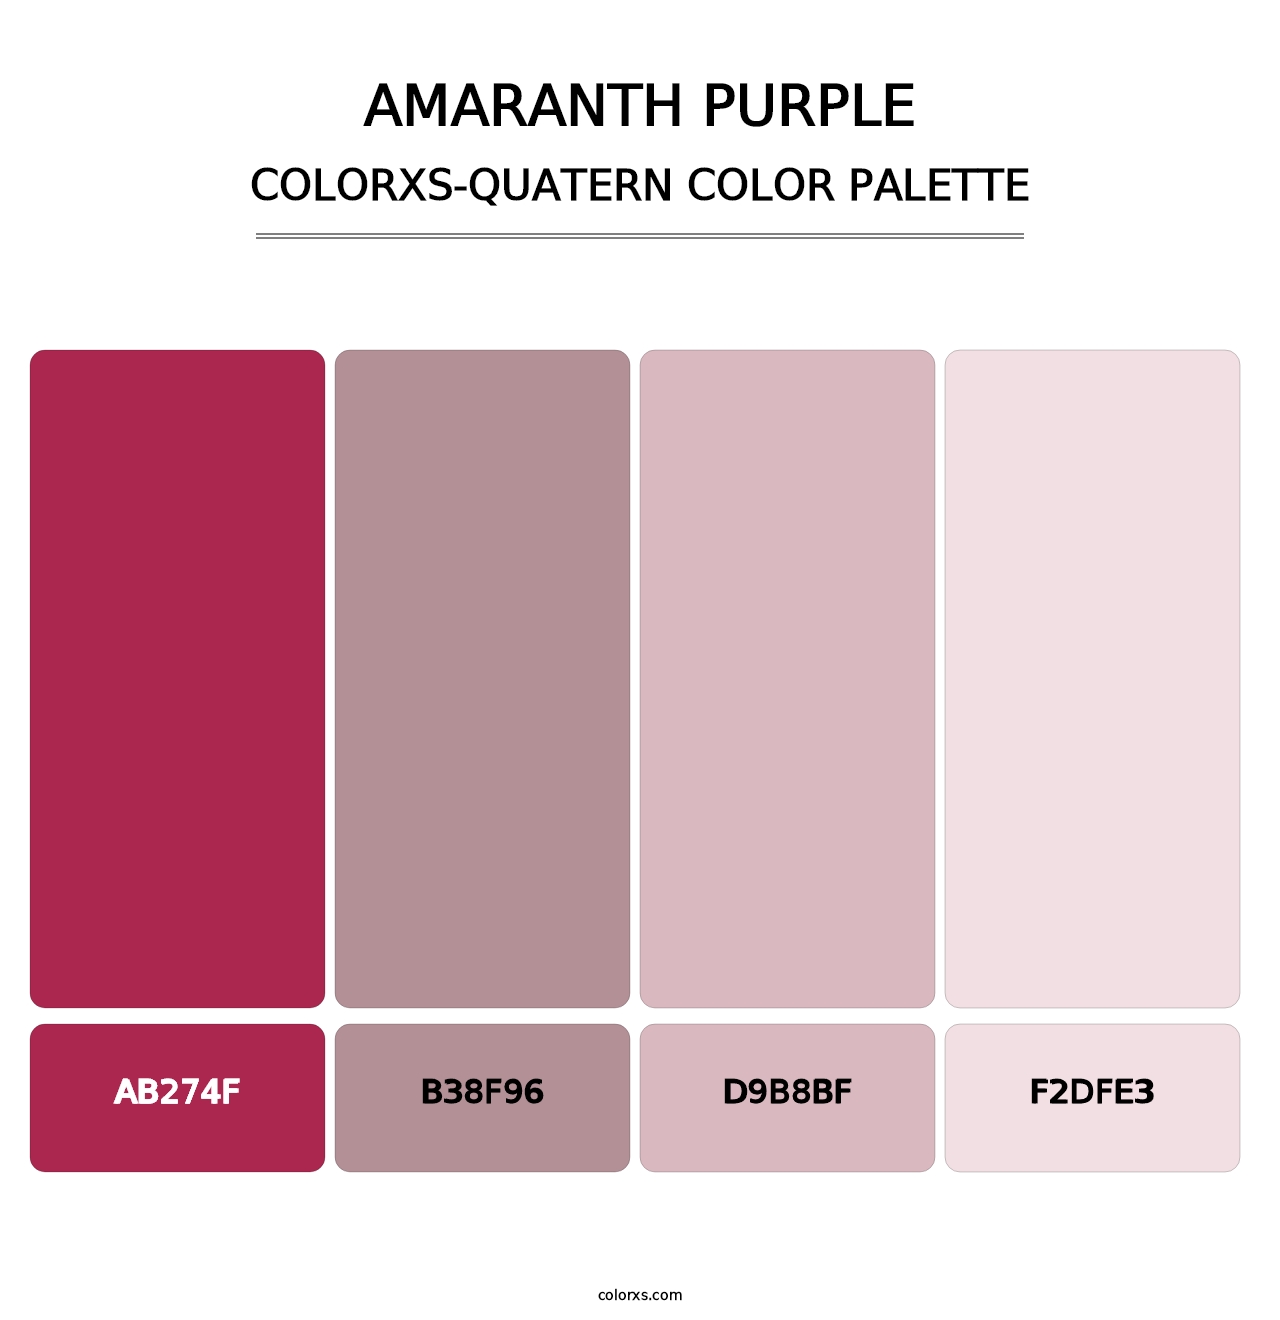 Amaranth Purple - Colorxs Quatern Palette